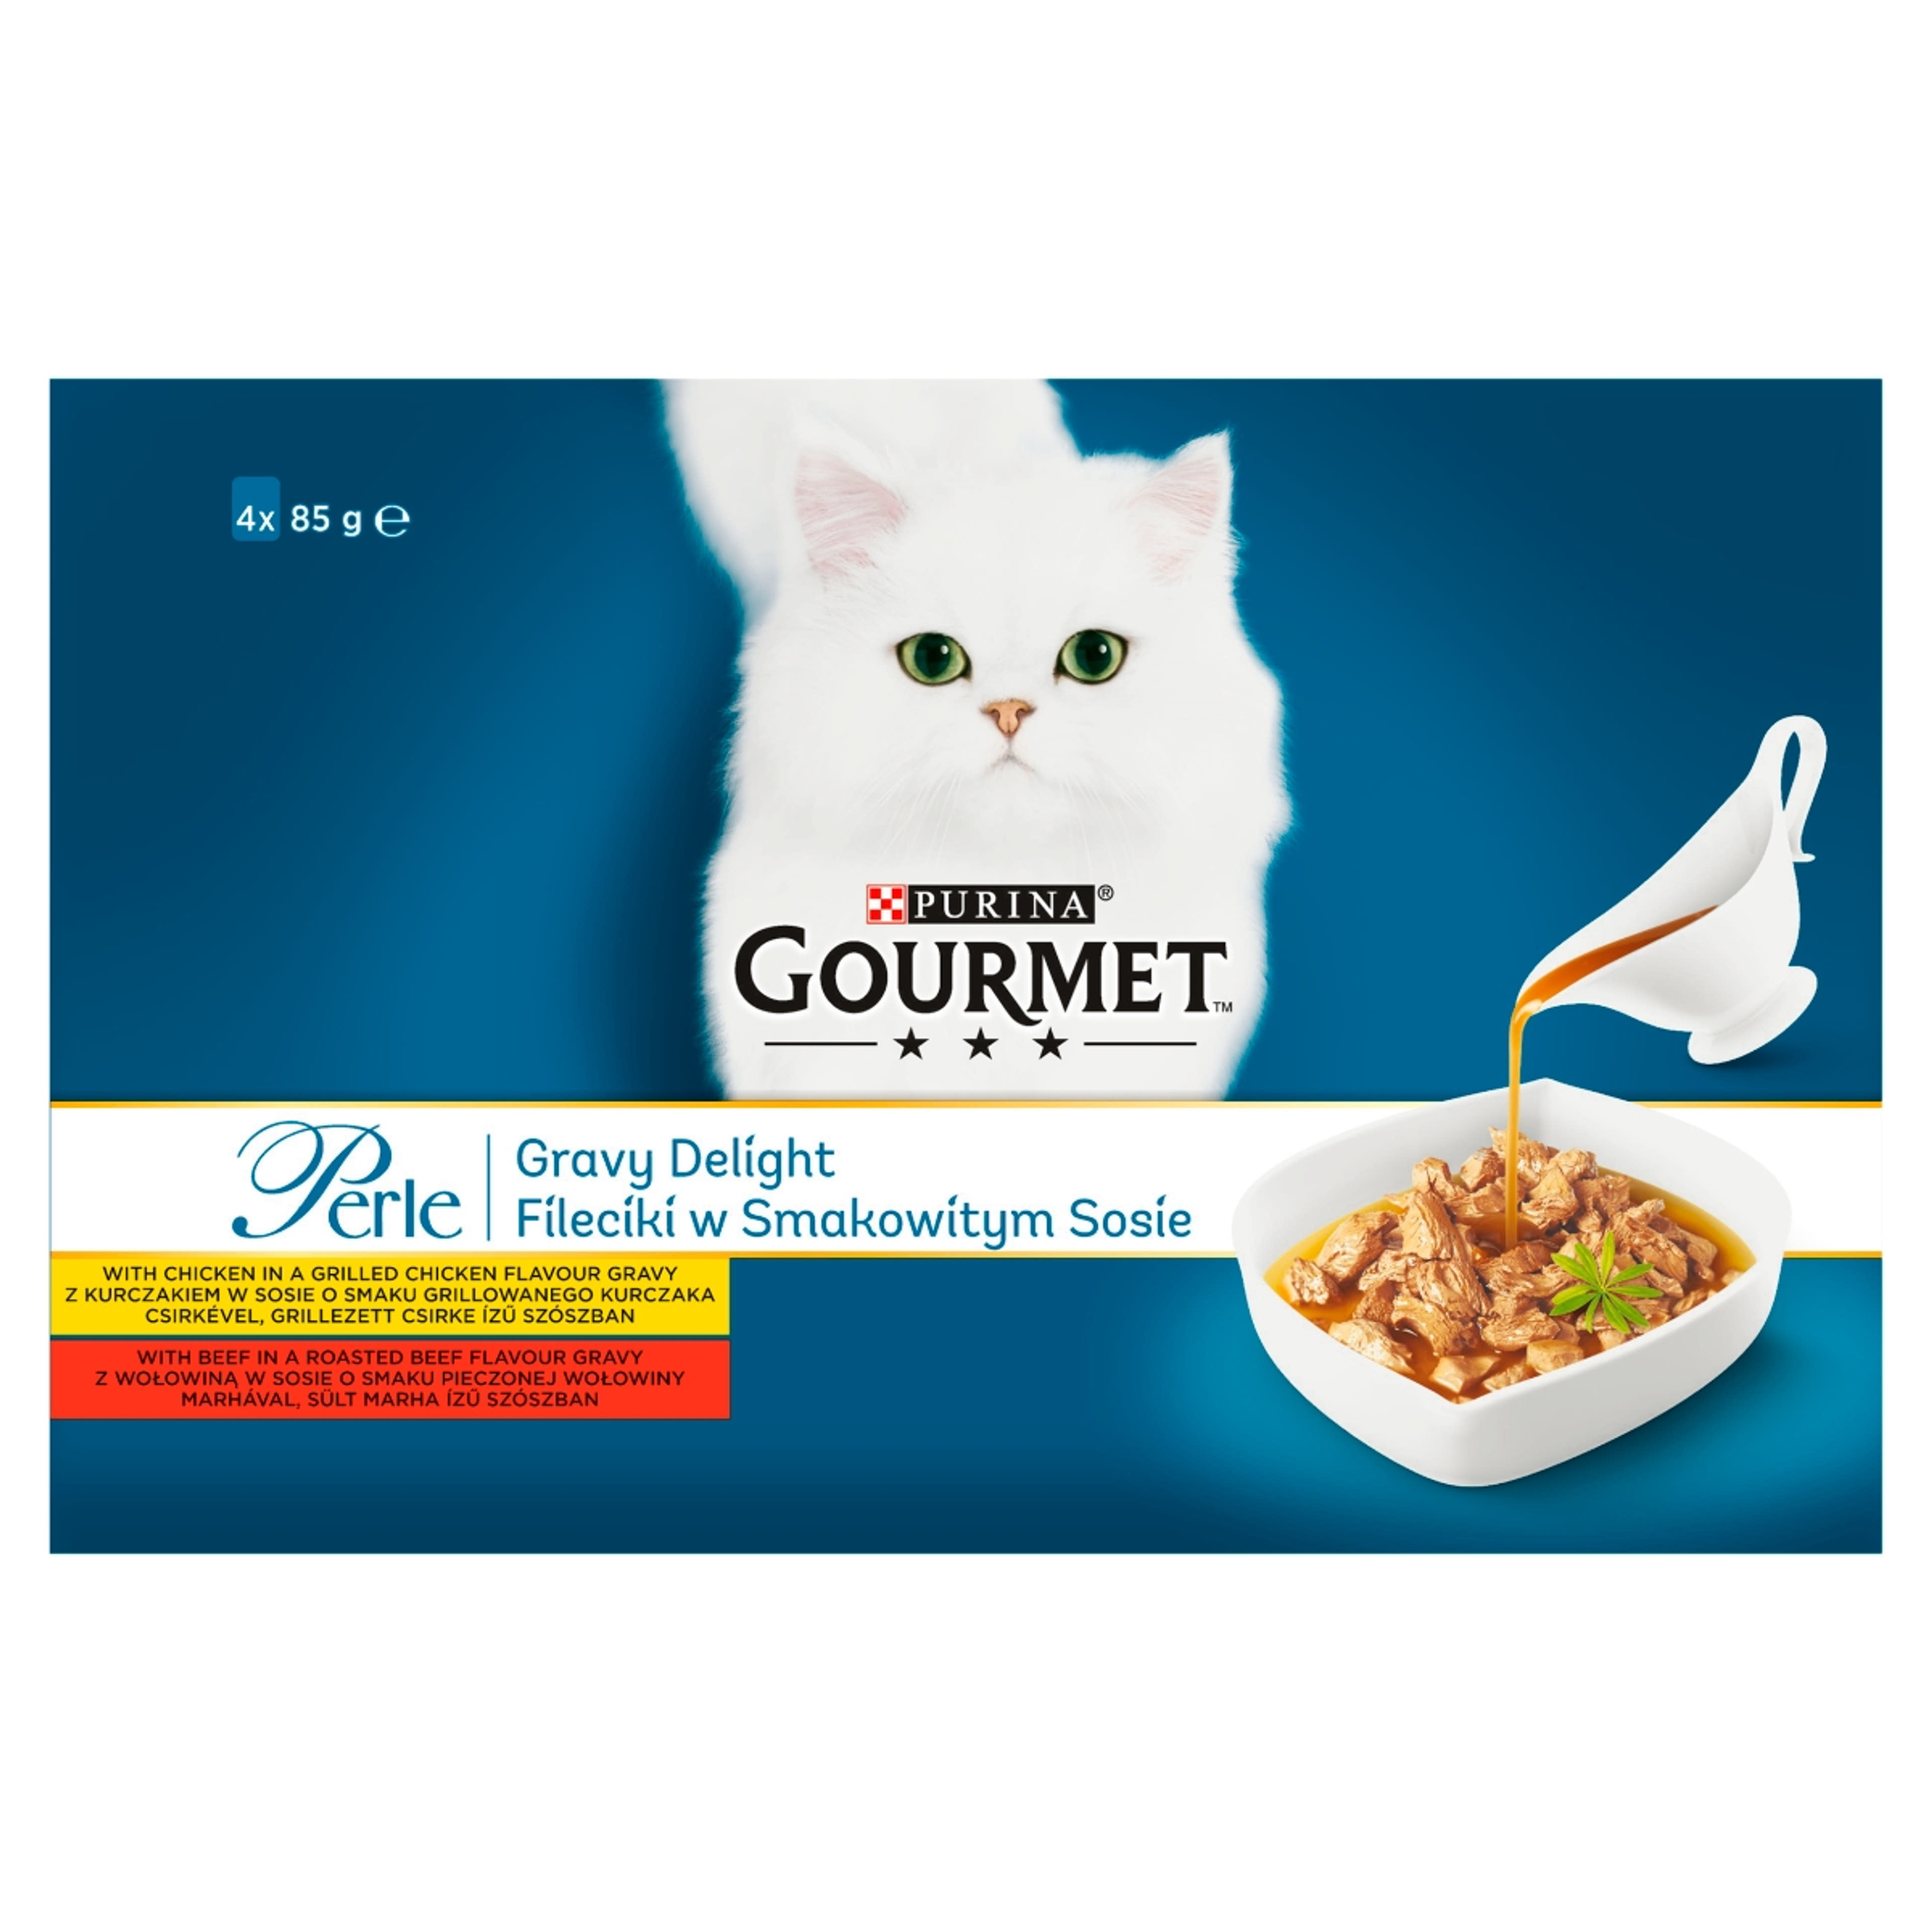 Gourmet Perle Gravy Delight alutasak macskáknak, csirkével és marhával szószban (4x85 g) -  340 g